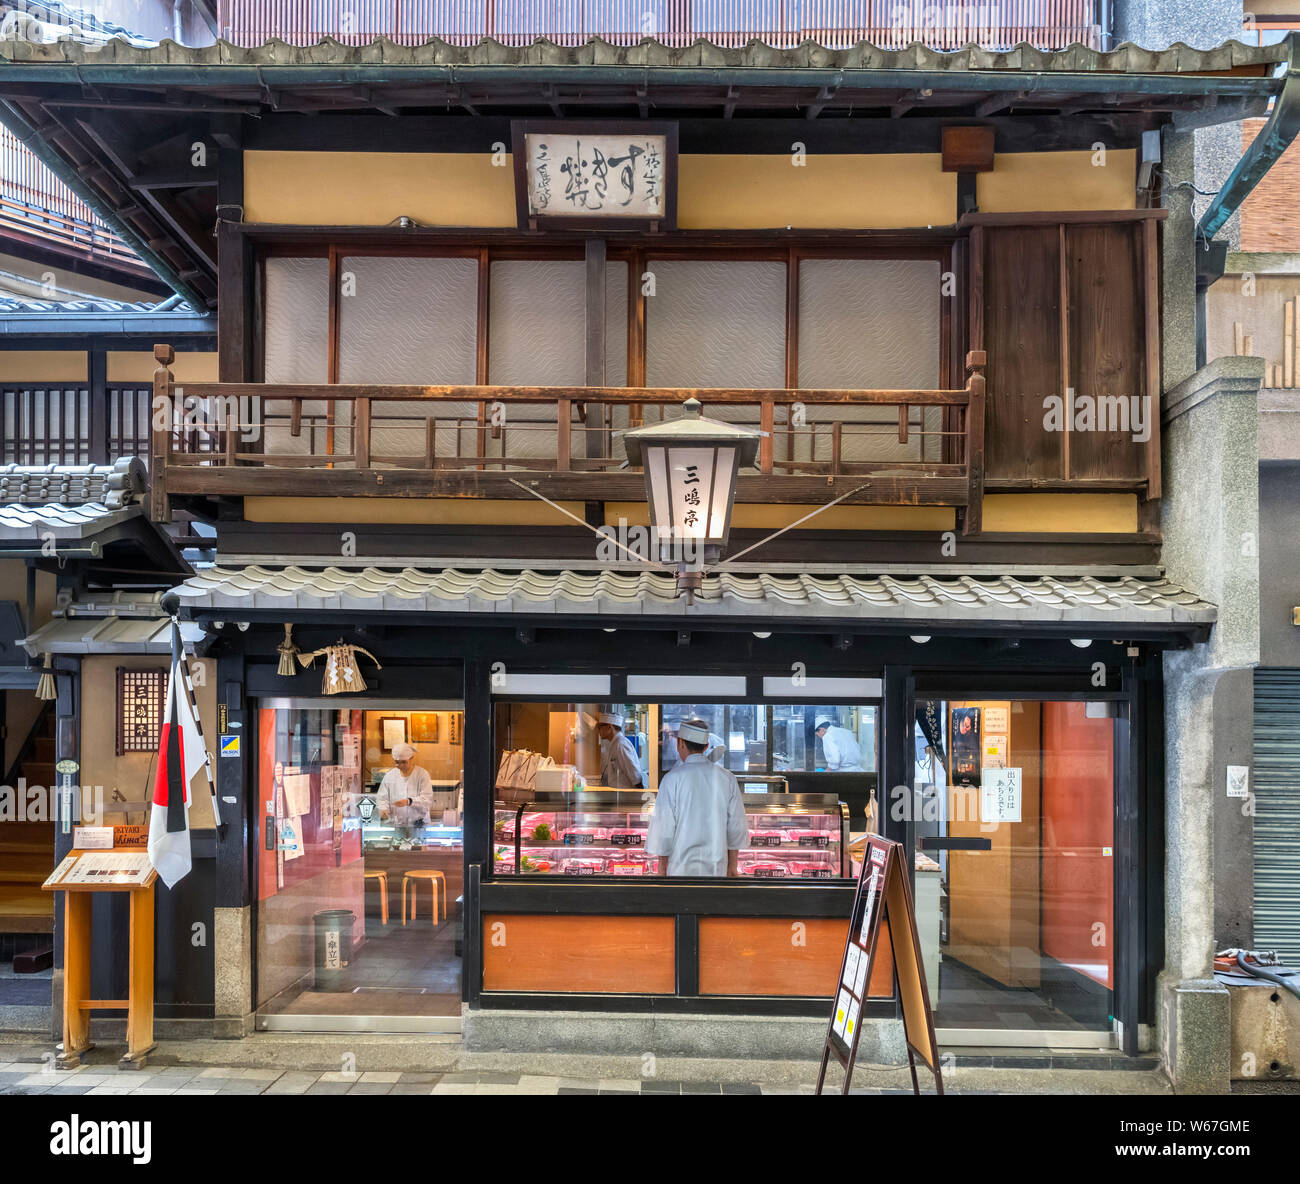 Boucherie traditionnelle dans la galerie marchande Teramachi, Teramachi-dori, Kyoto, Japon Banque D'Images